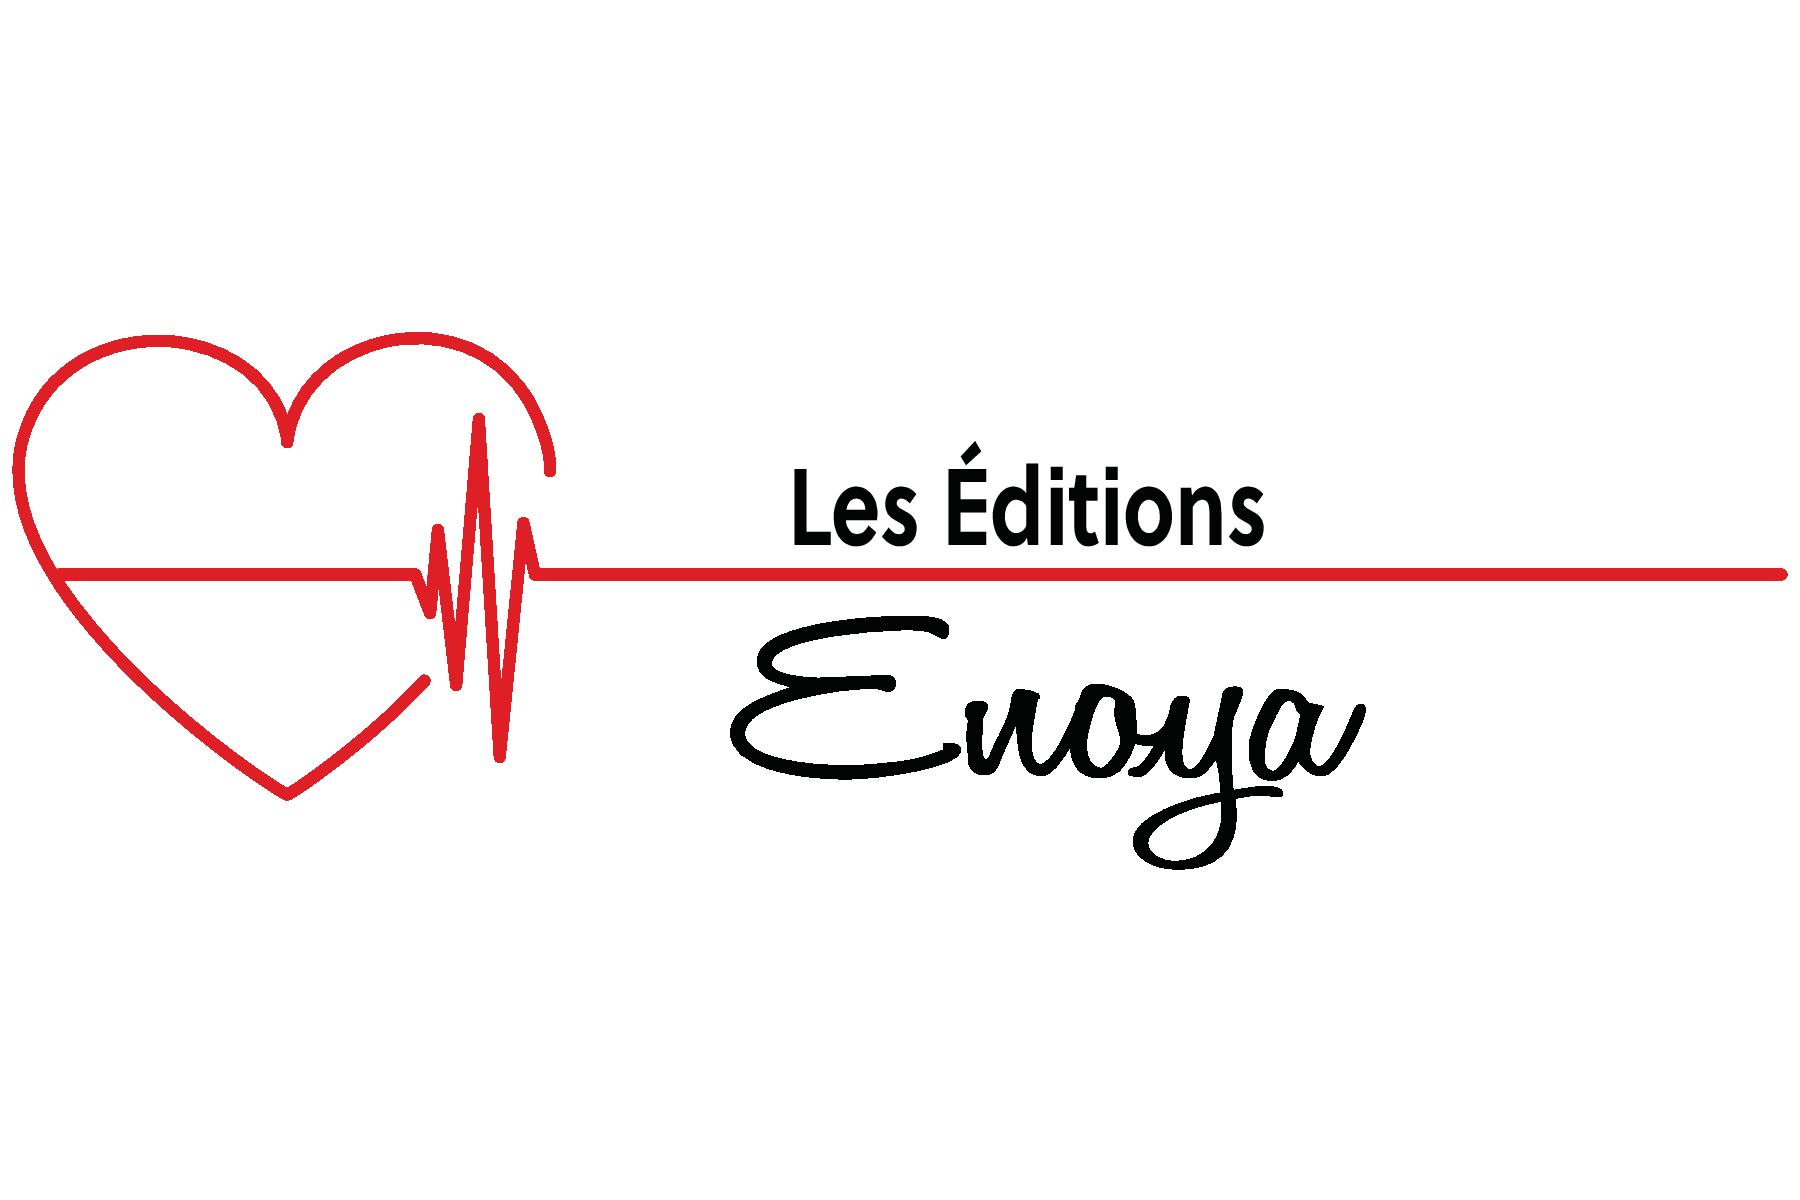 Les Éditions Enoya est une jeune maison d'édition où p0lus d'une vingtaine d'auteurs ont été publiés.